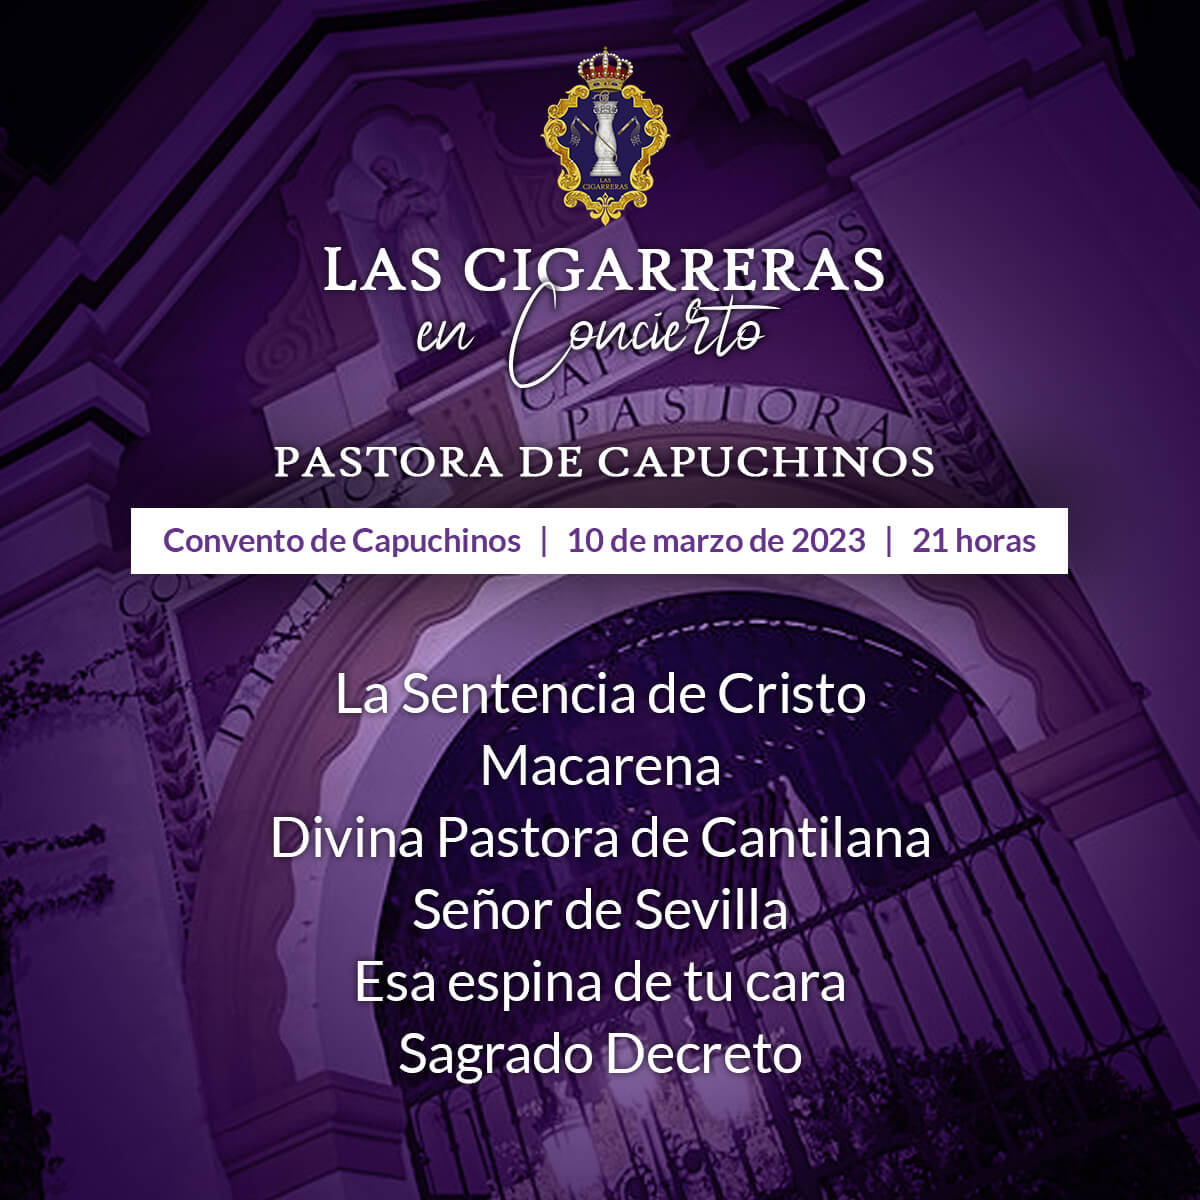 Programa del concierto de Las Cigarreras en Capuchinos 2023